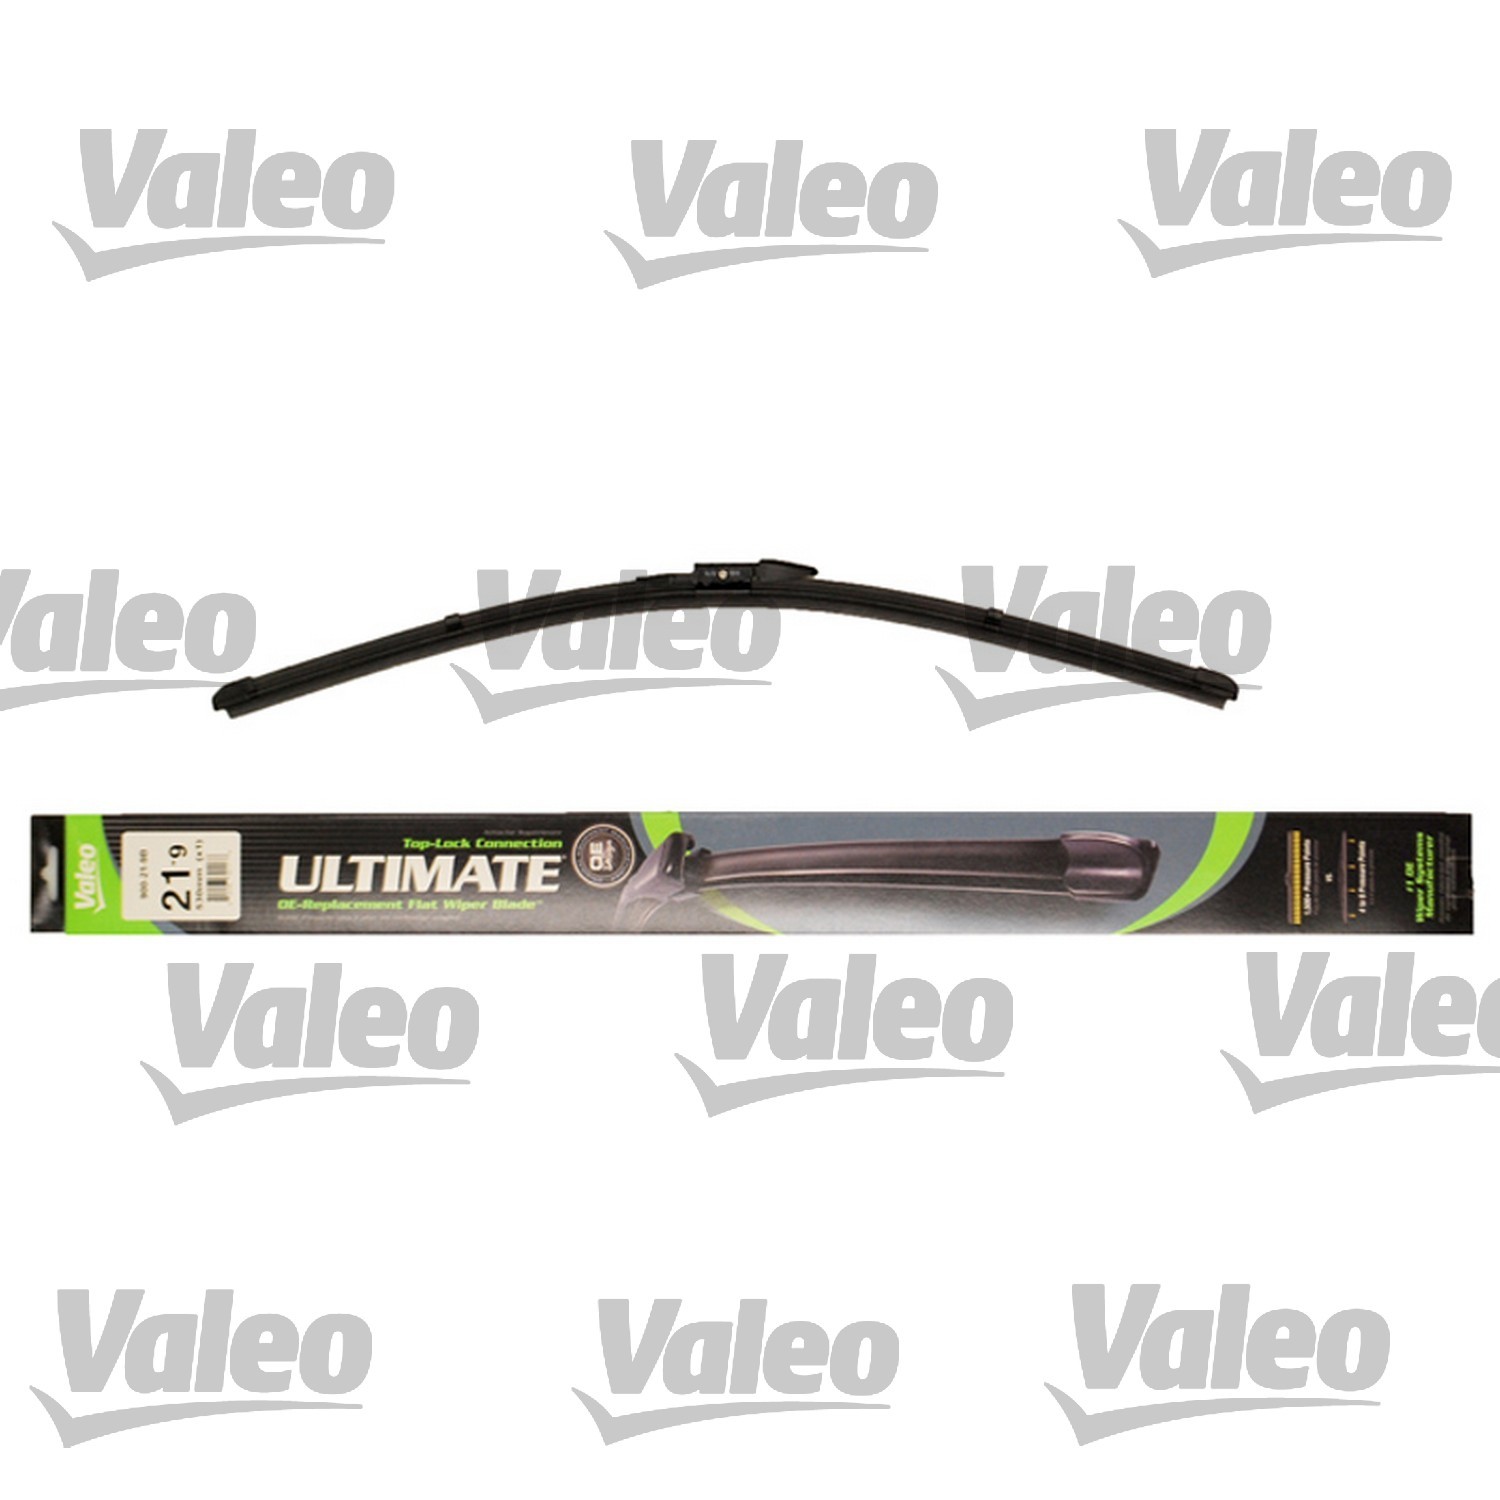 VALEO - Ultimate Wiper Blade Refill - VEO 900-21-9B